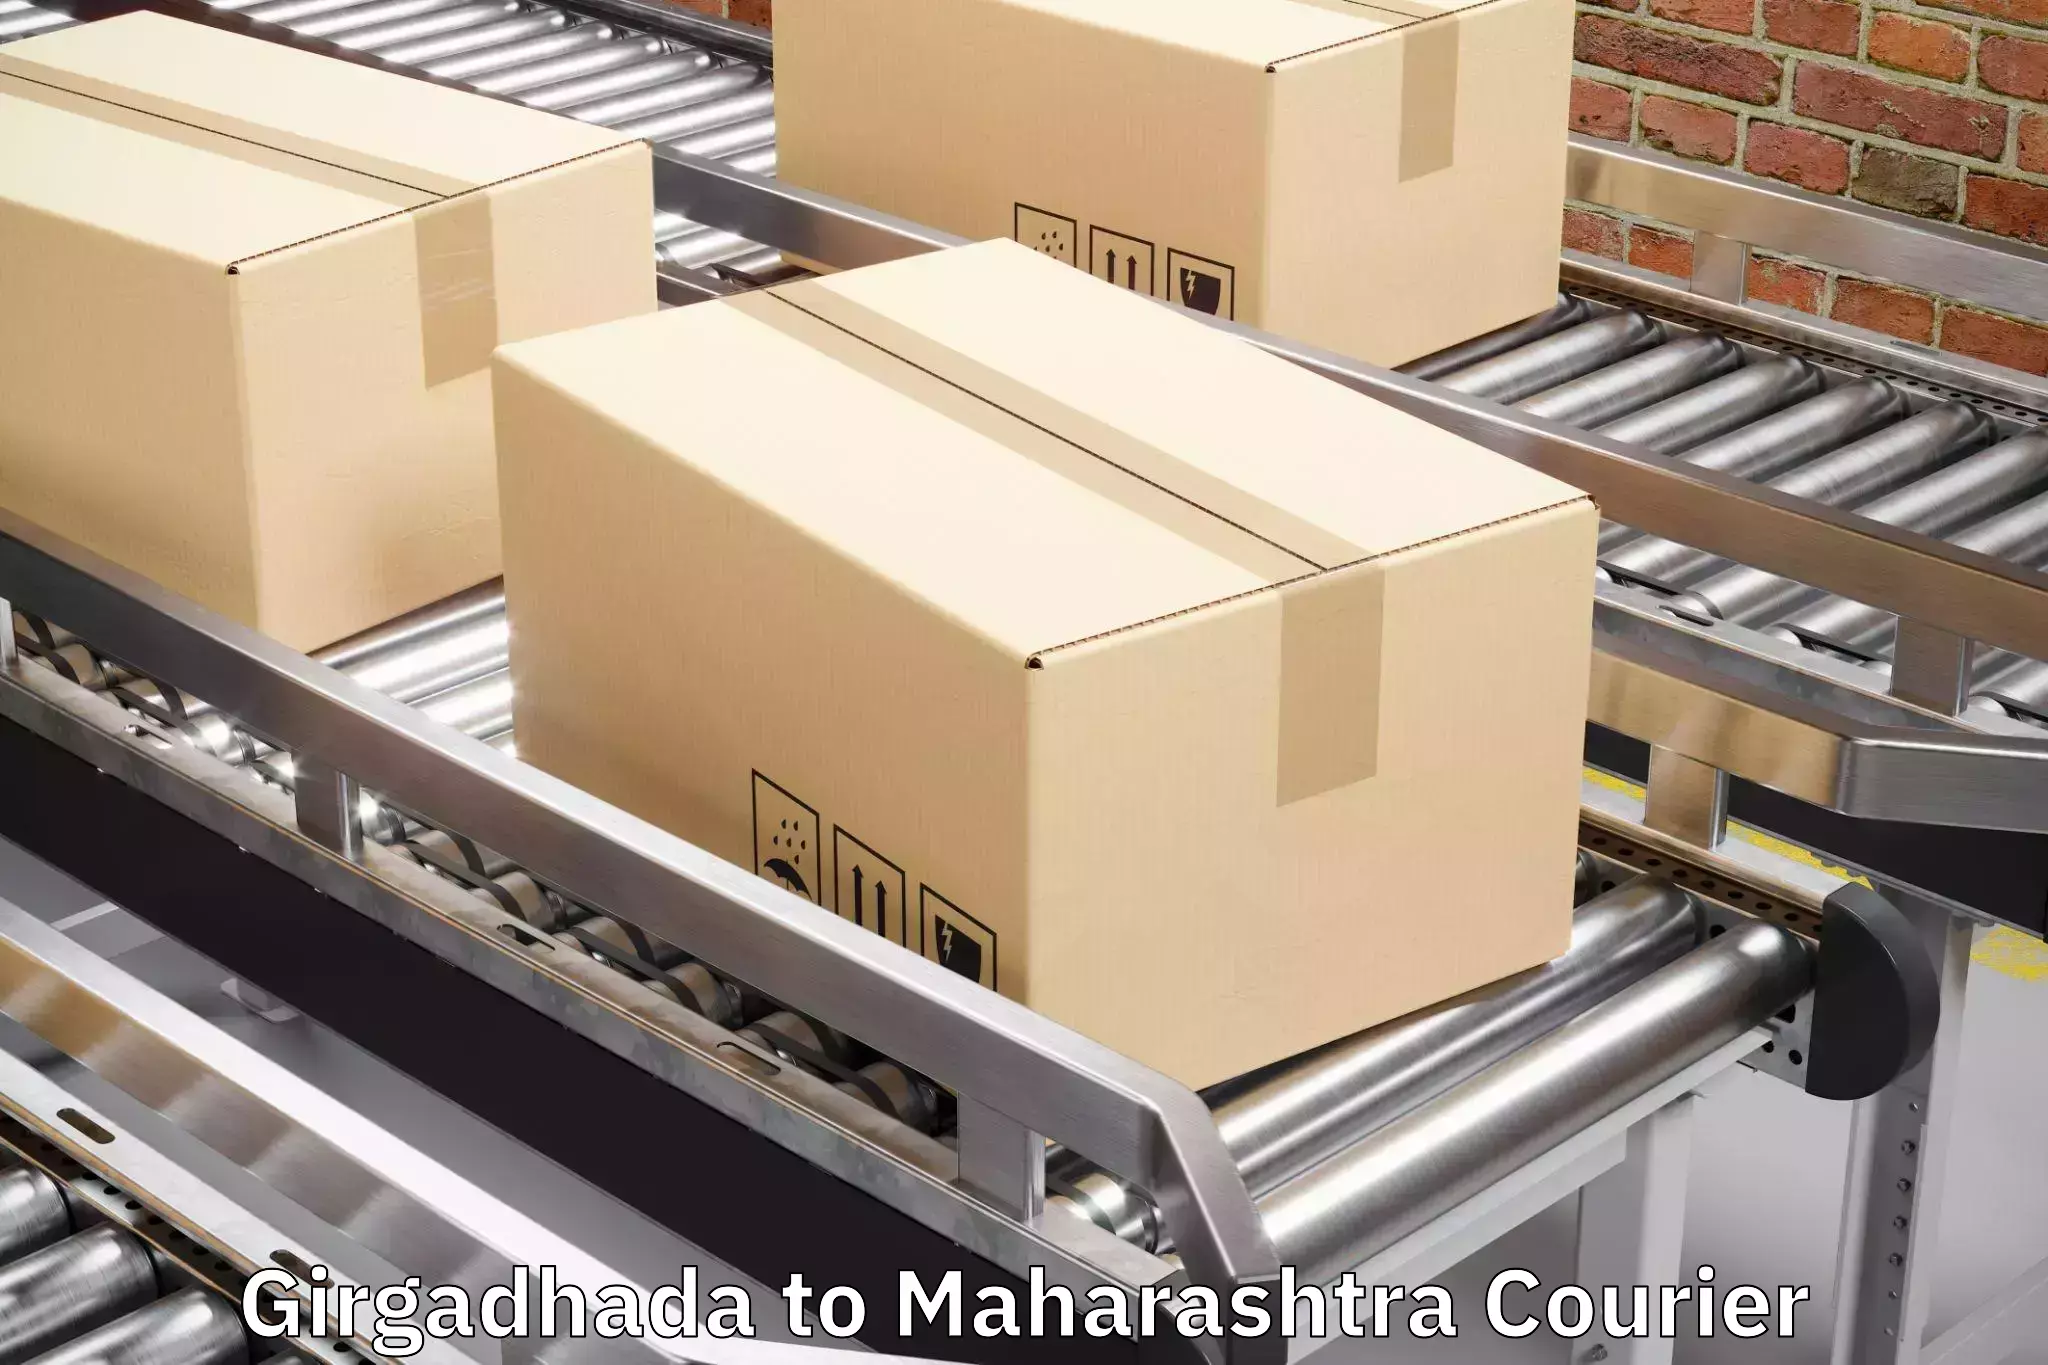 Luggage shipping solutions Girgadhada to Ahmednagar